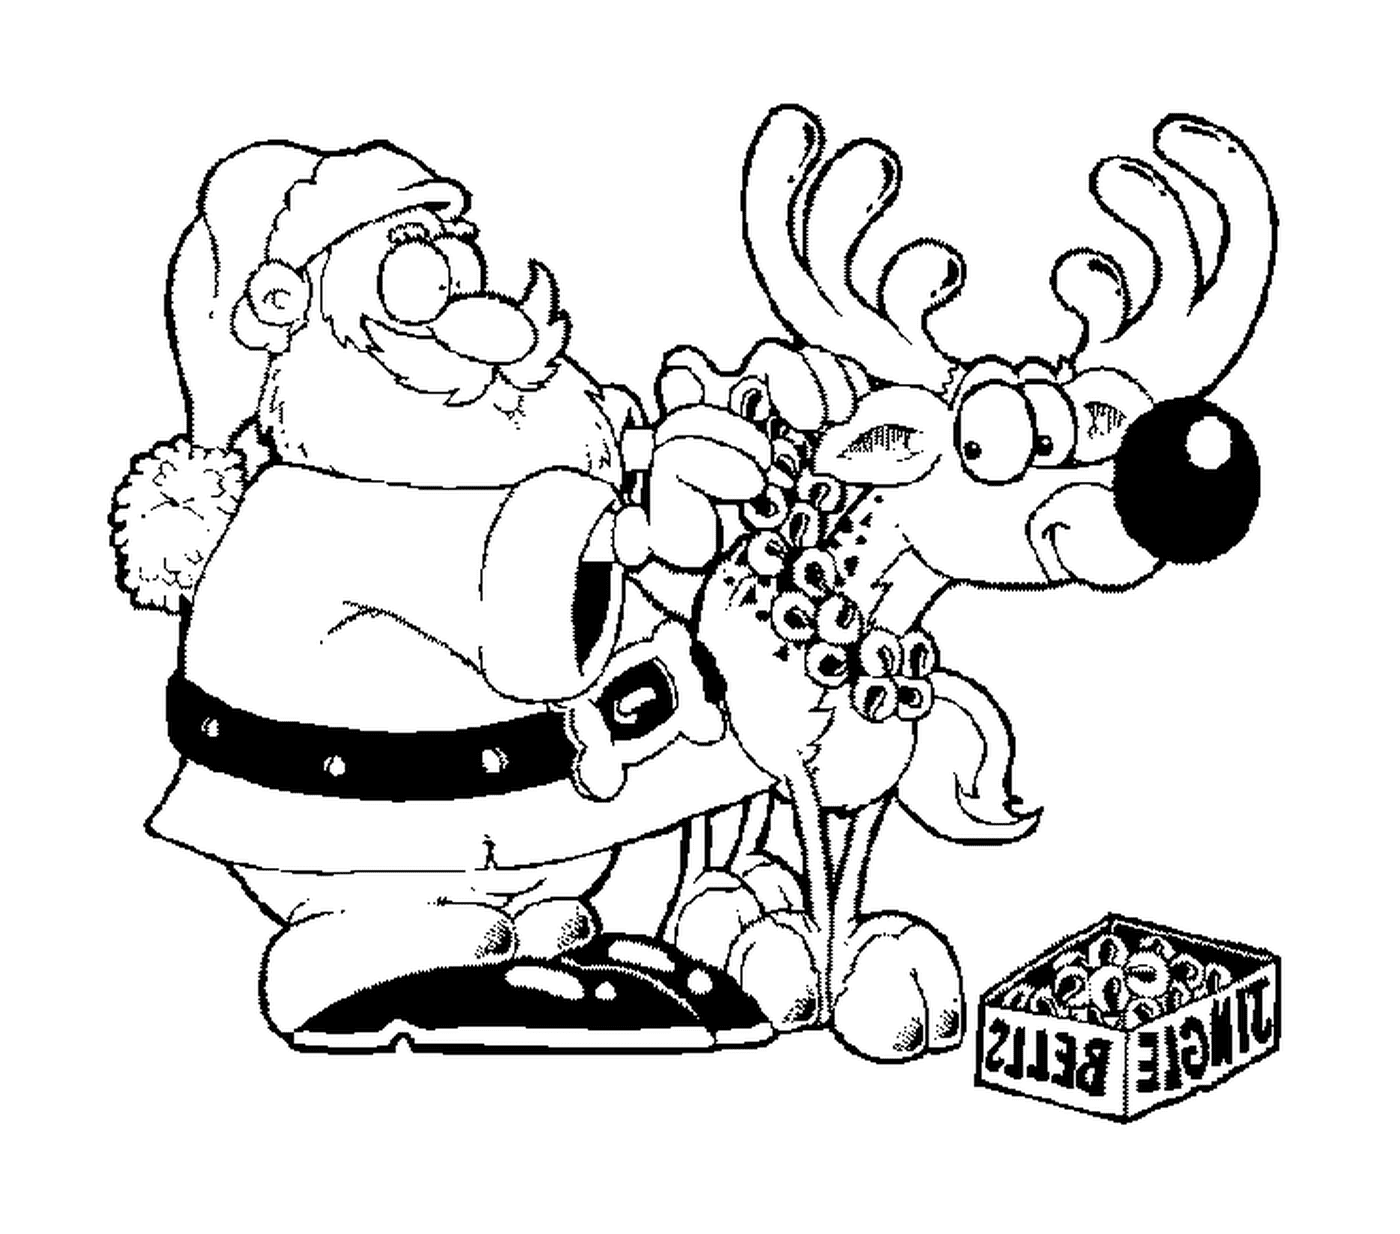  Santa hangs bells on her reindeer 